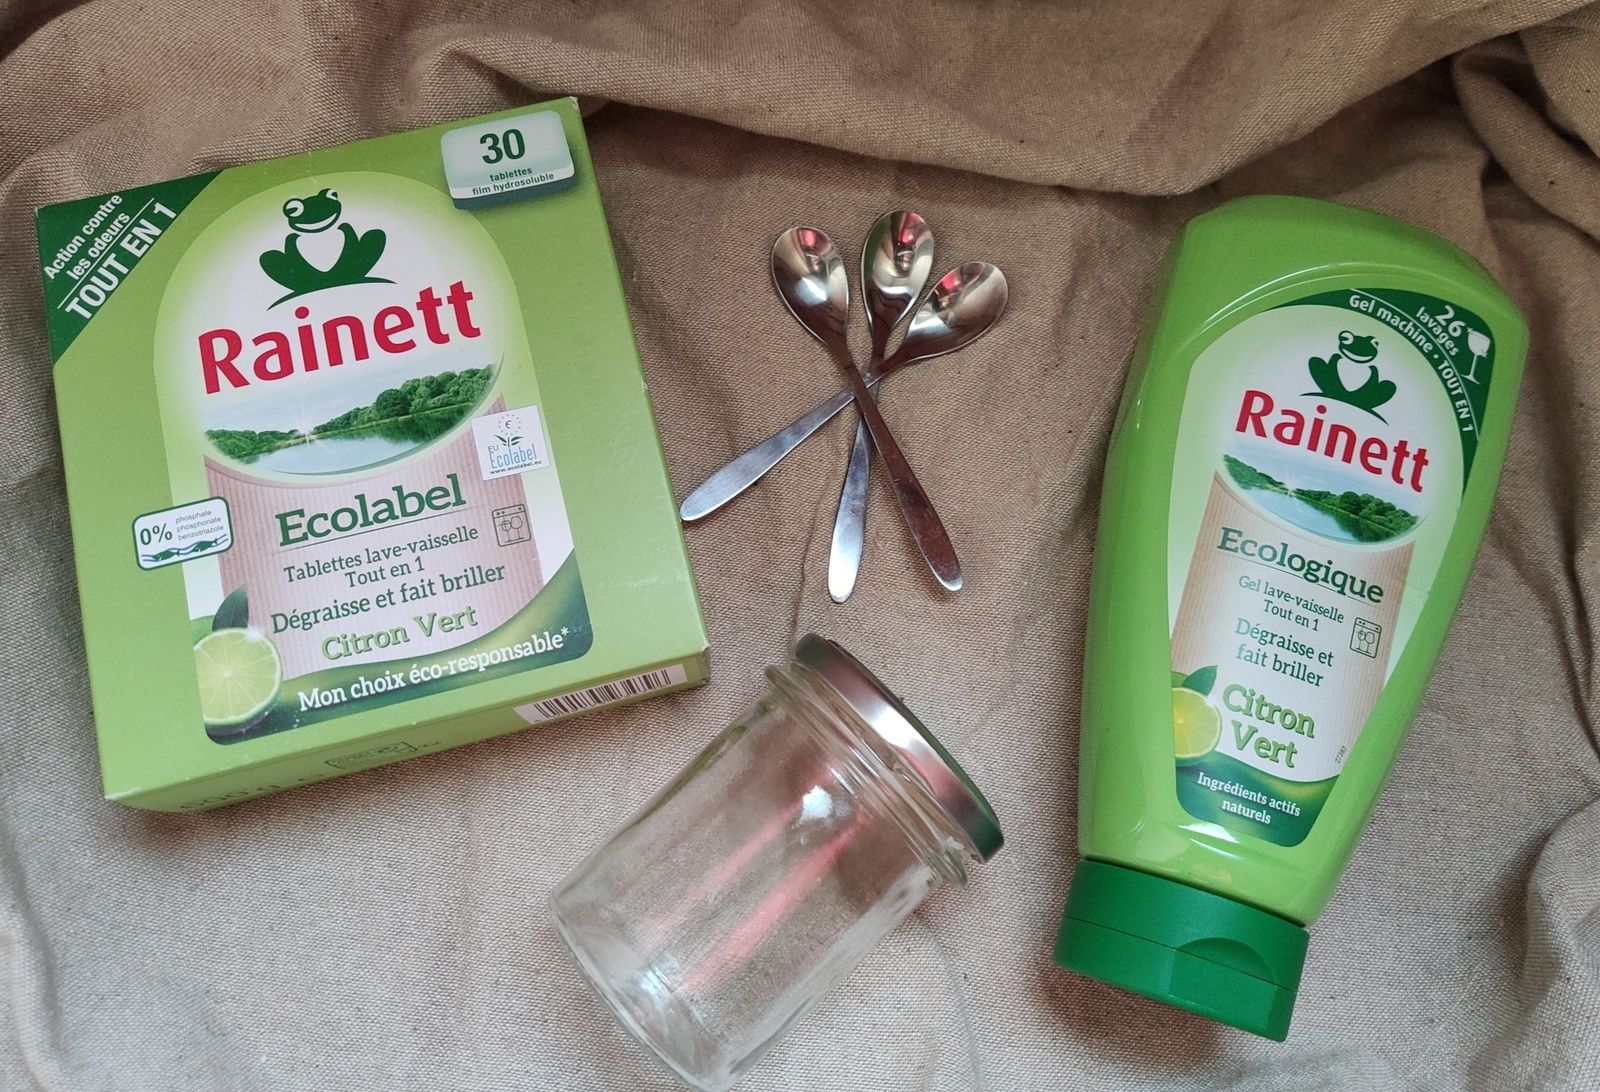 Rainett Tablettes Lave Vaisselle Tout en 1 Ecologique 30 Tablettes